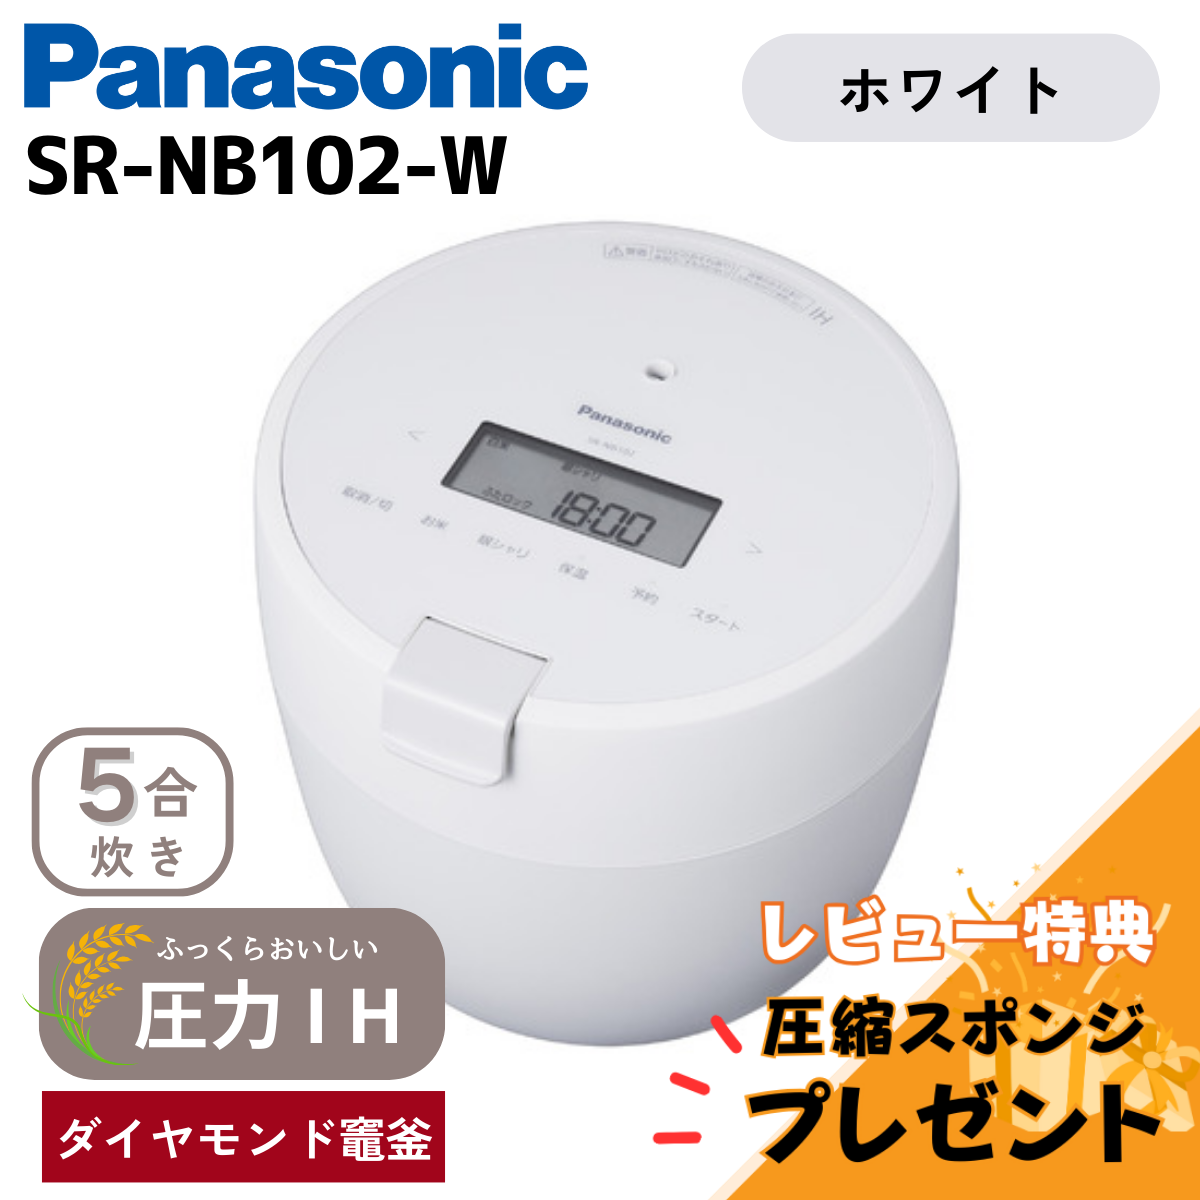 パナソニック 炊飯器 SR-NB102-G グリーン 5合炊き 圧力IH Panasonic 